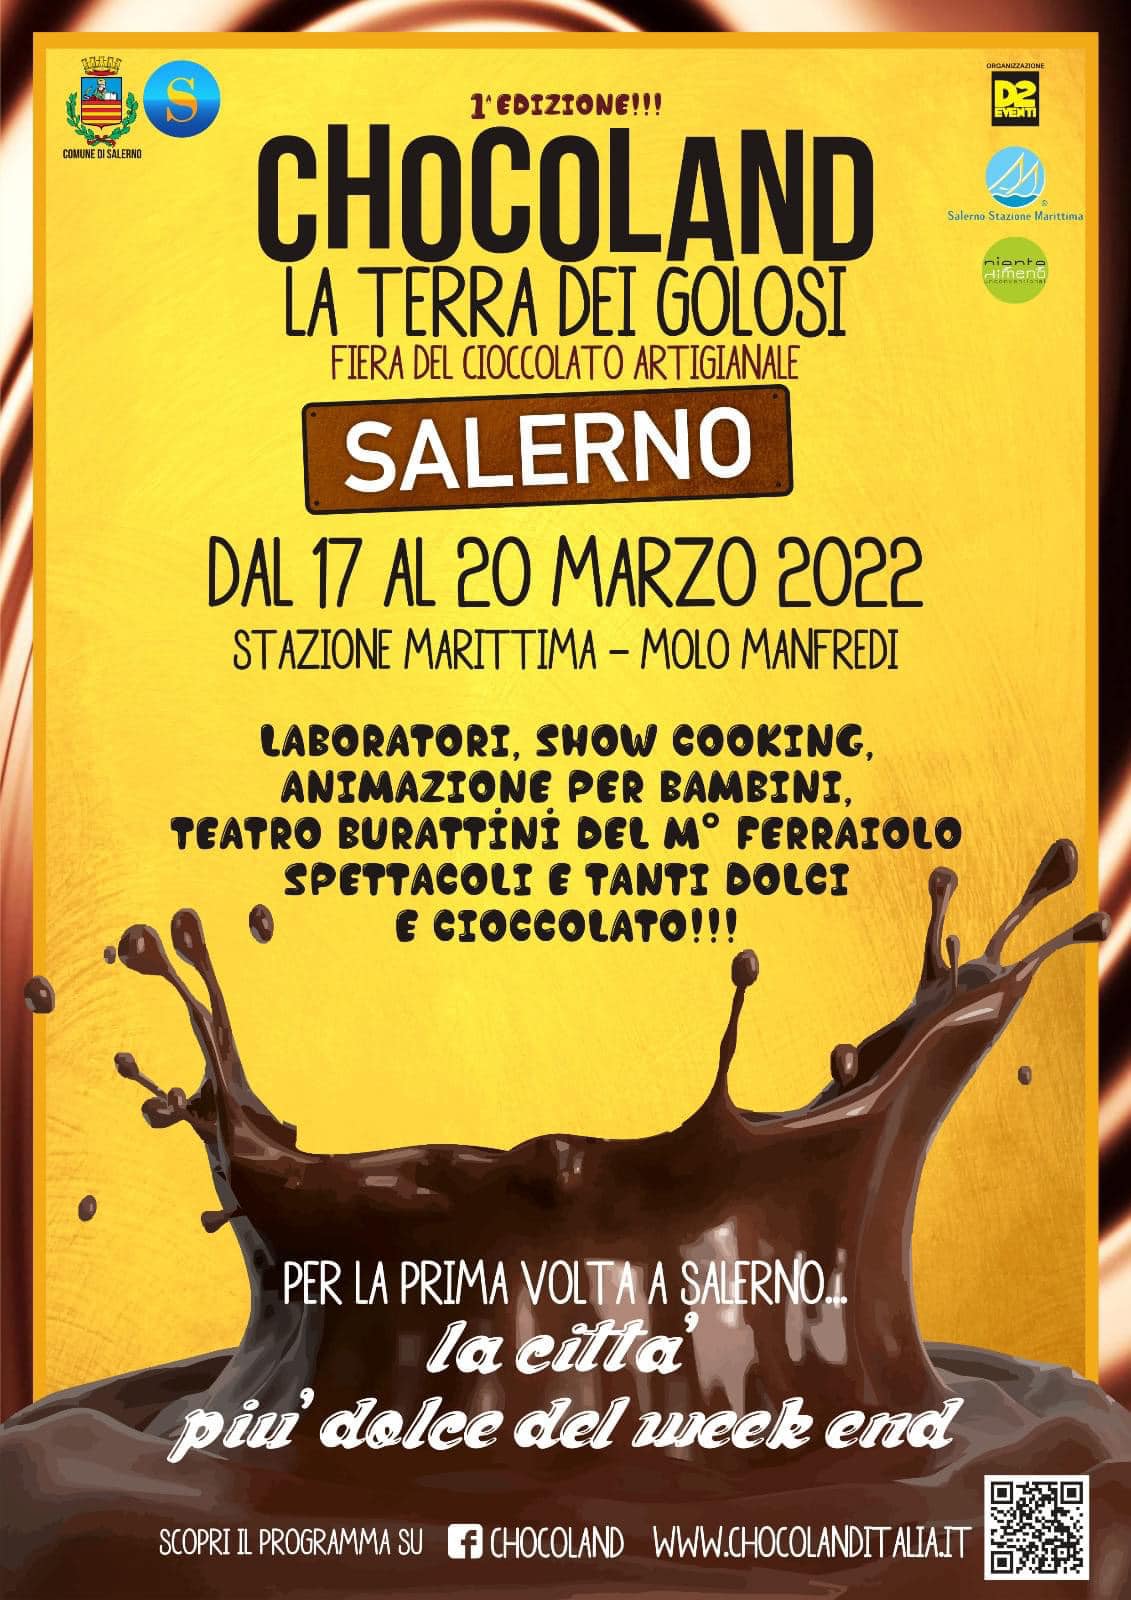 Salerno città del cioccolato con “Chocoland, la terra dei golosi”